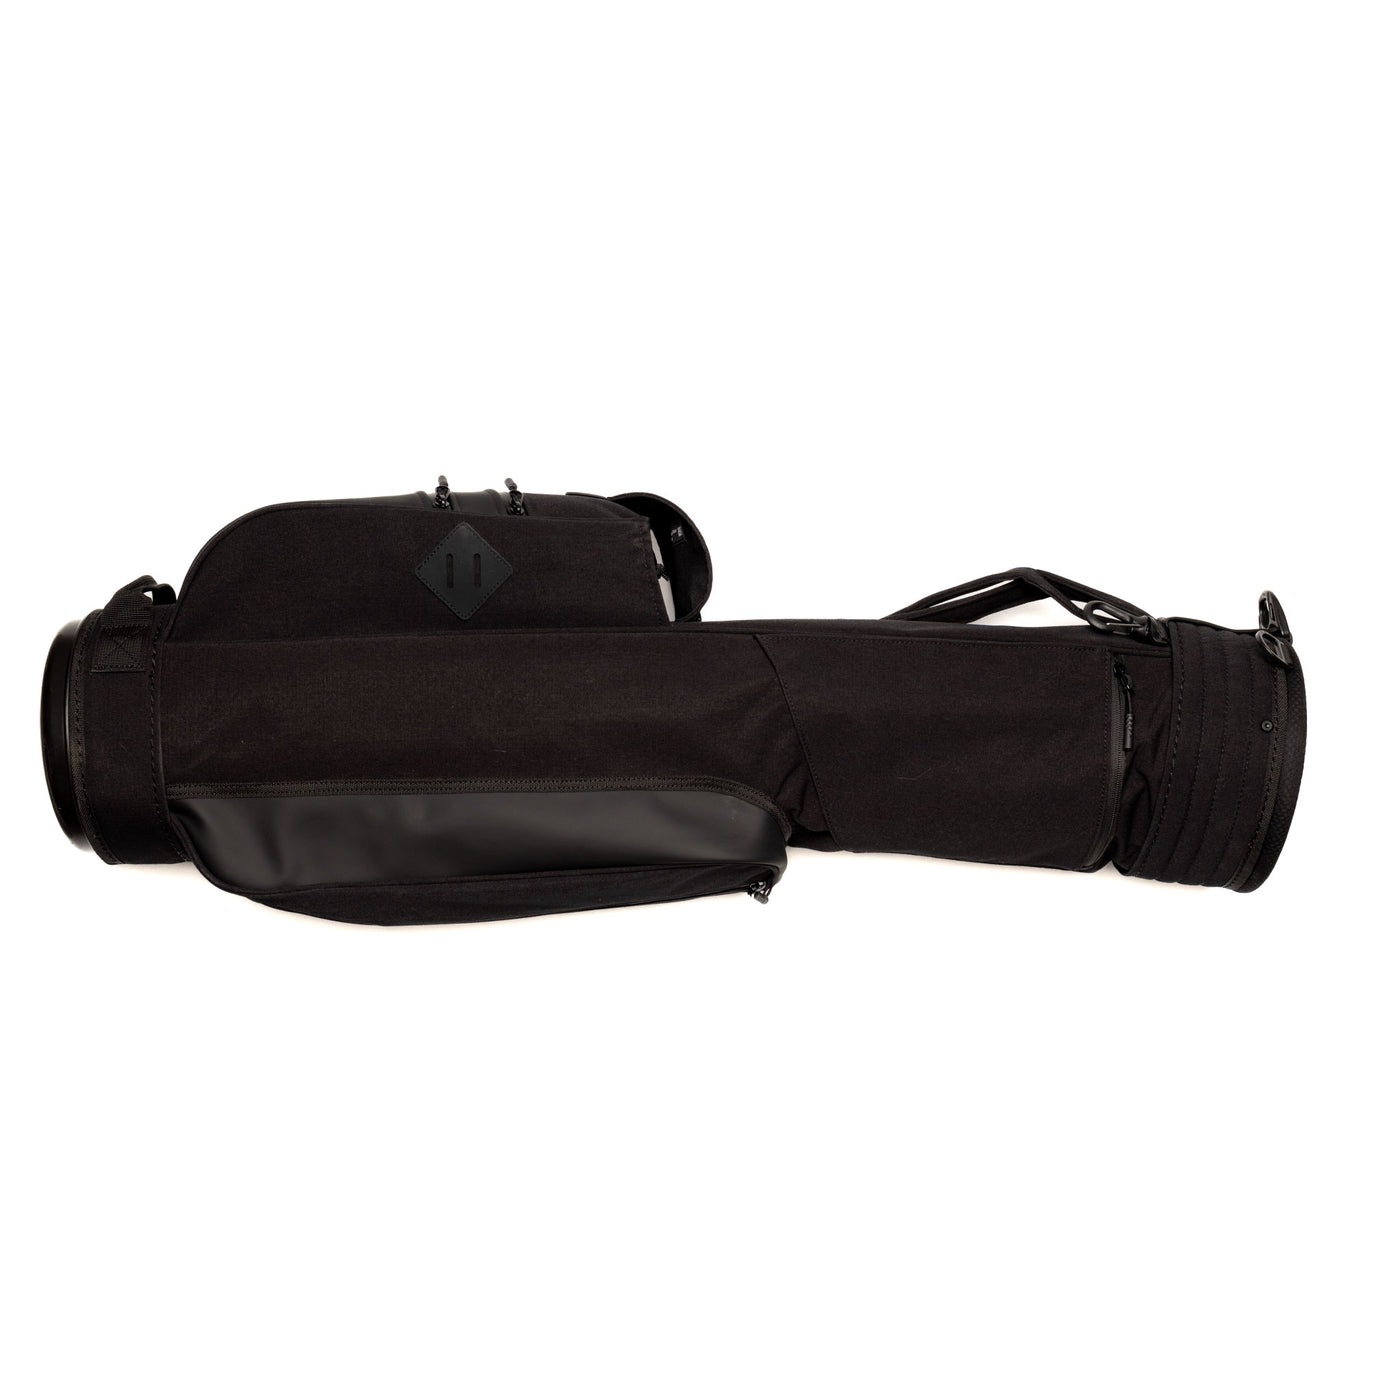 Rover Carry Bag - Black